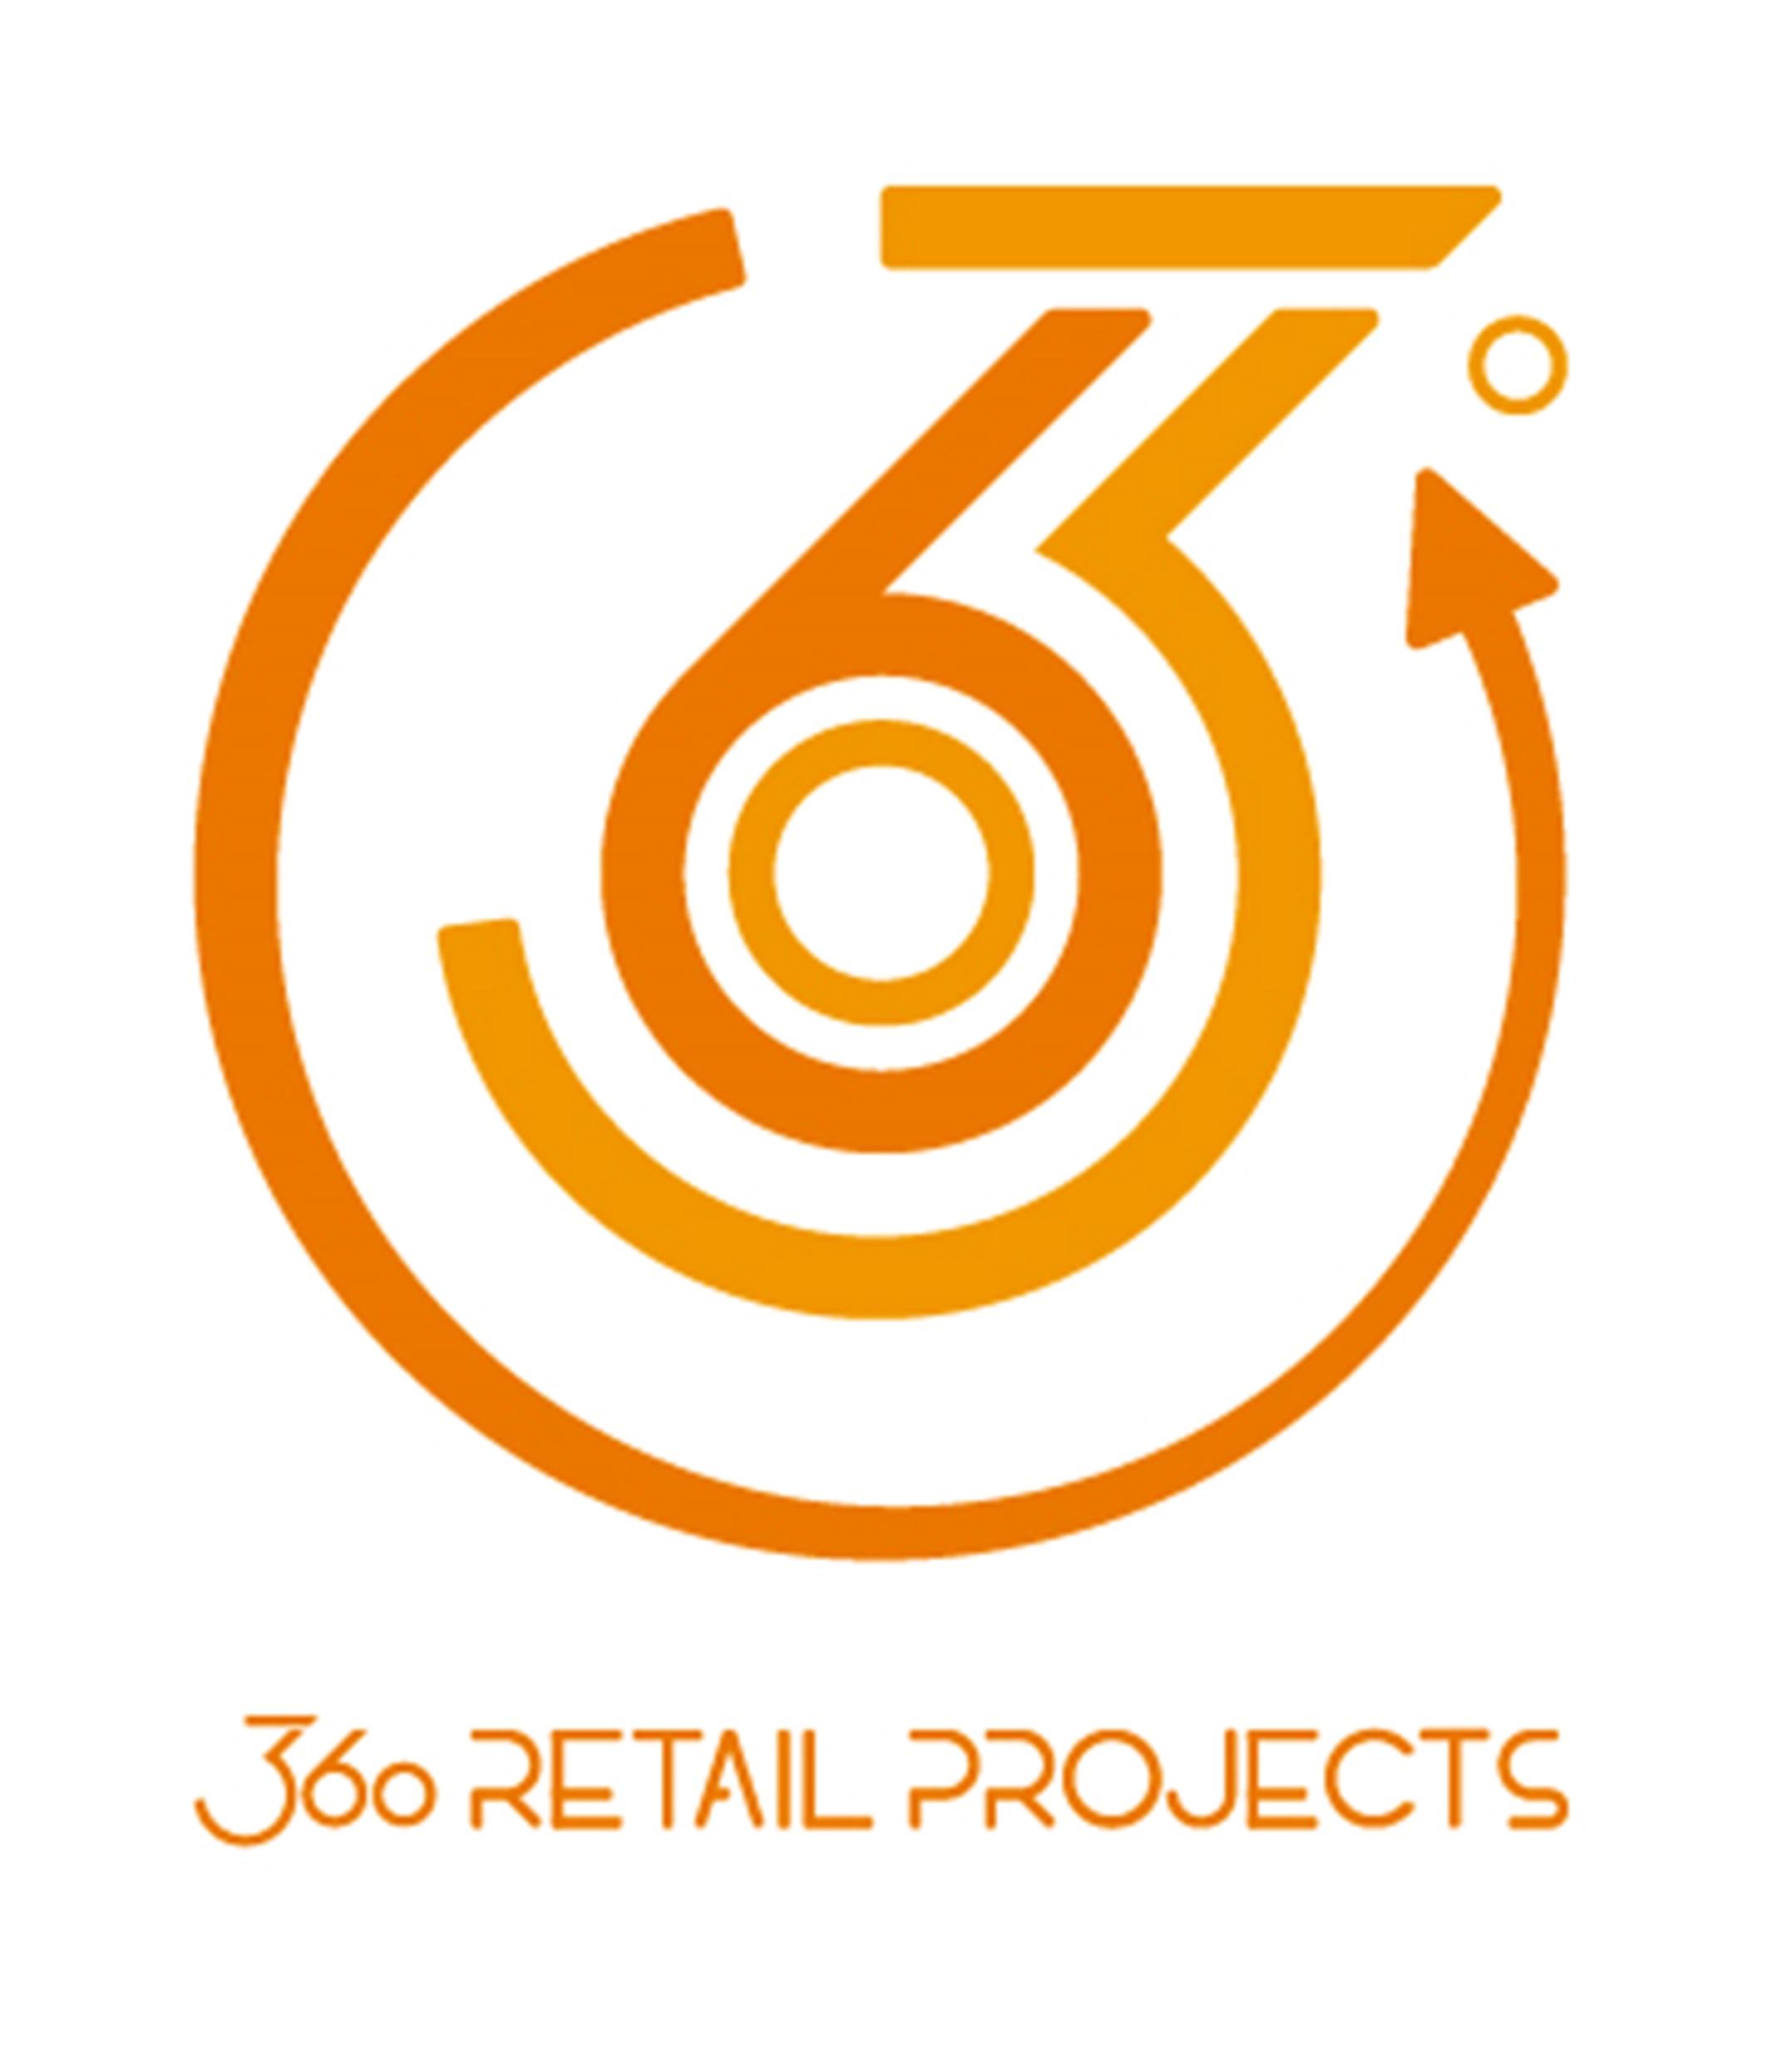 logo-360retailporjects-construccion-proyectos-retail-diseño